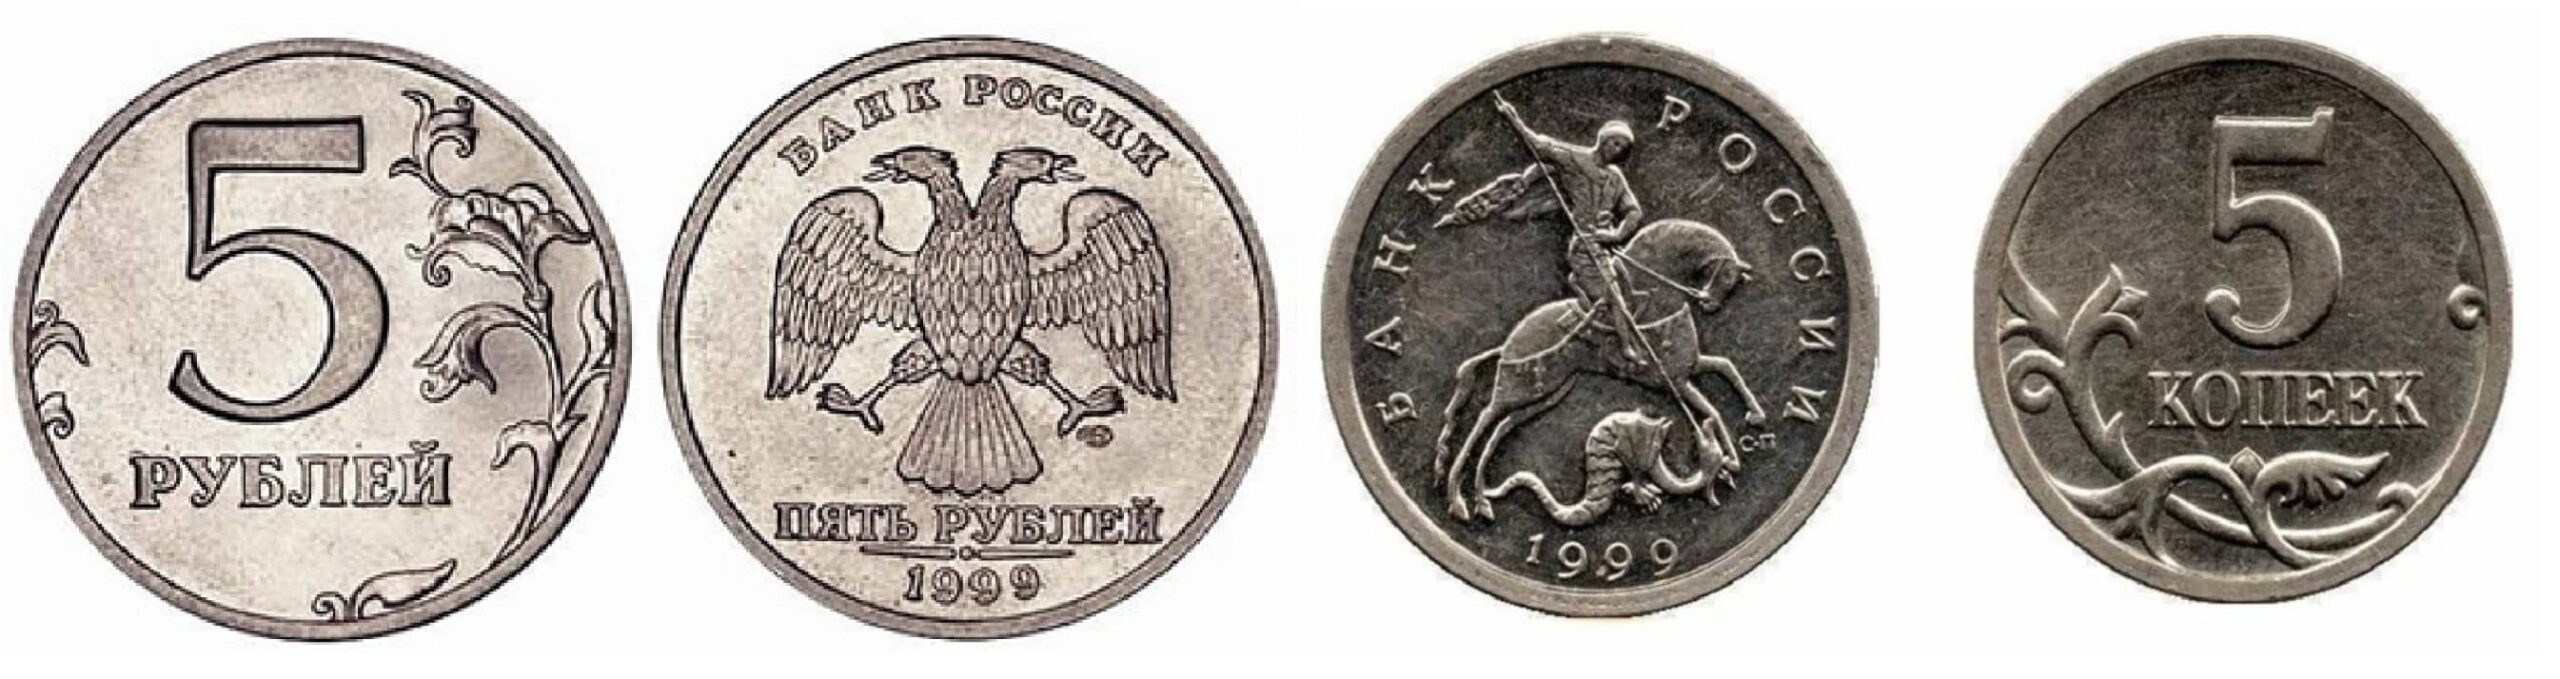 5 рублей 16 года. 5 Копеек 1999. Привидение монета. Польша 2 гроша 1999 год - герб.